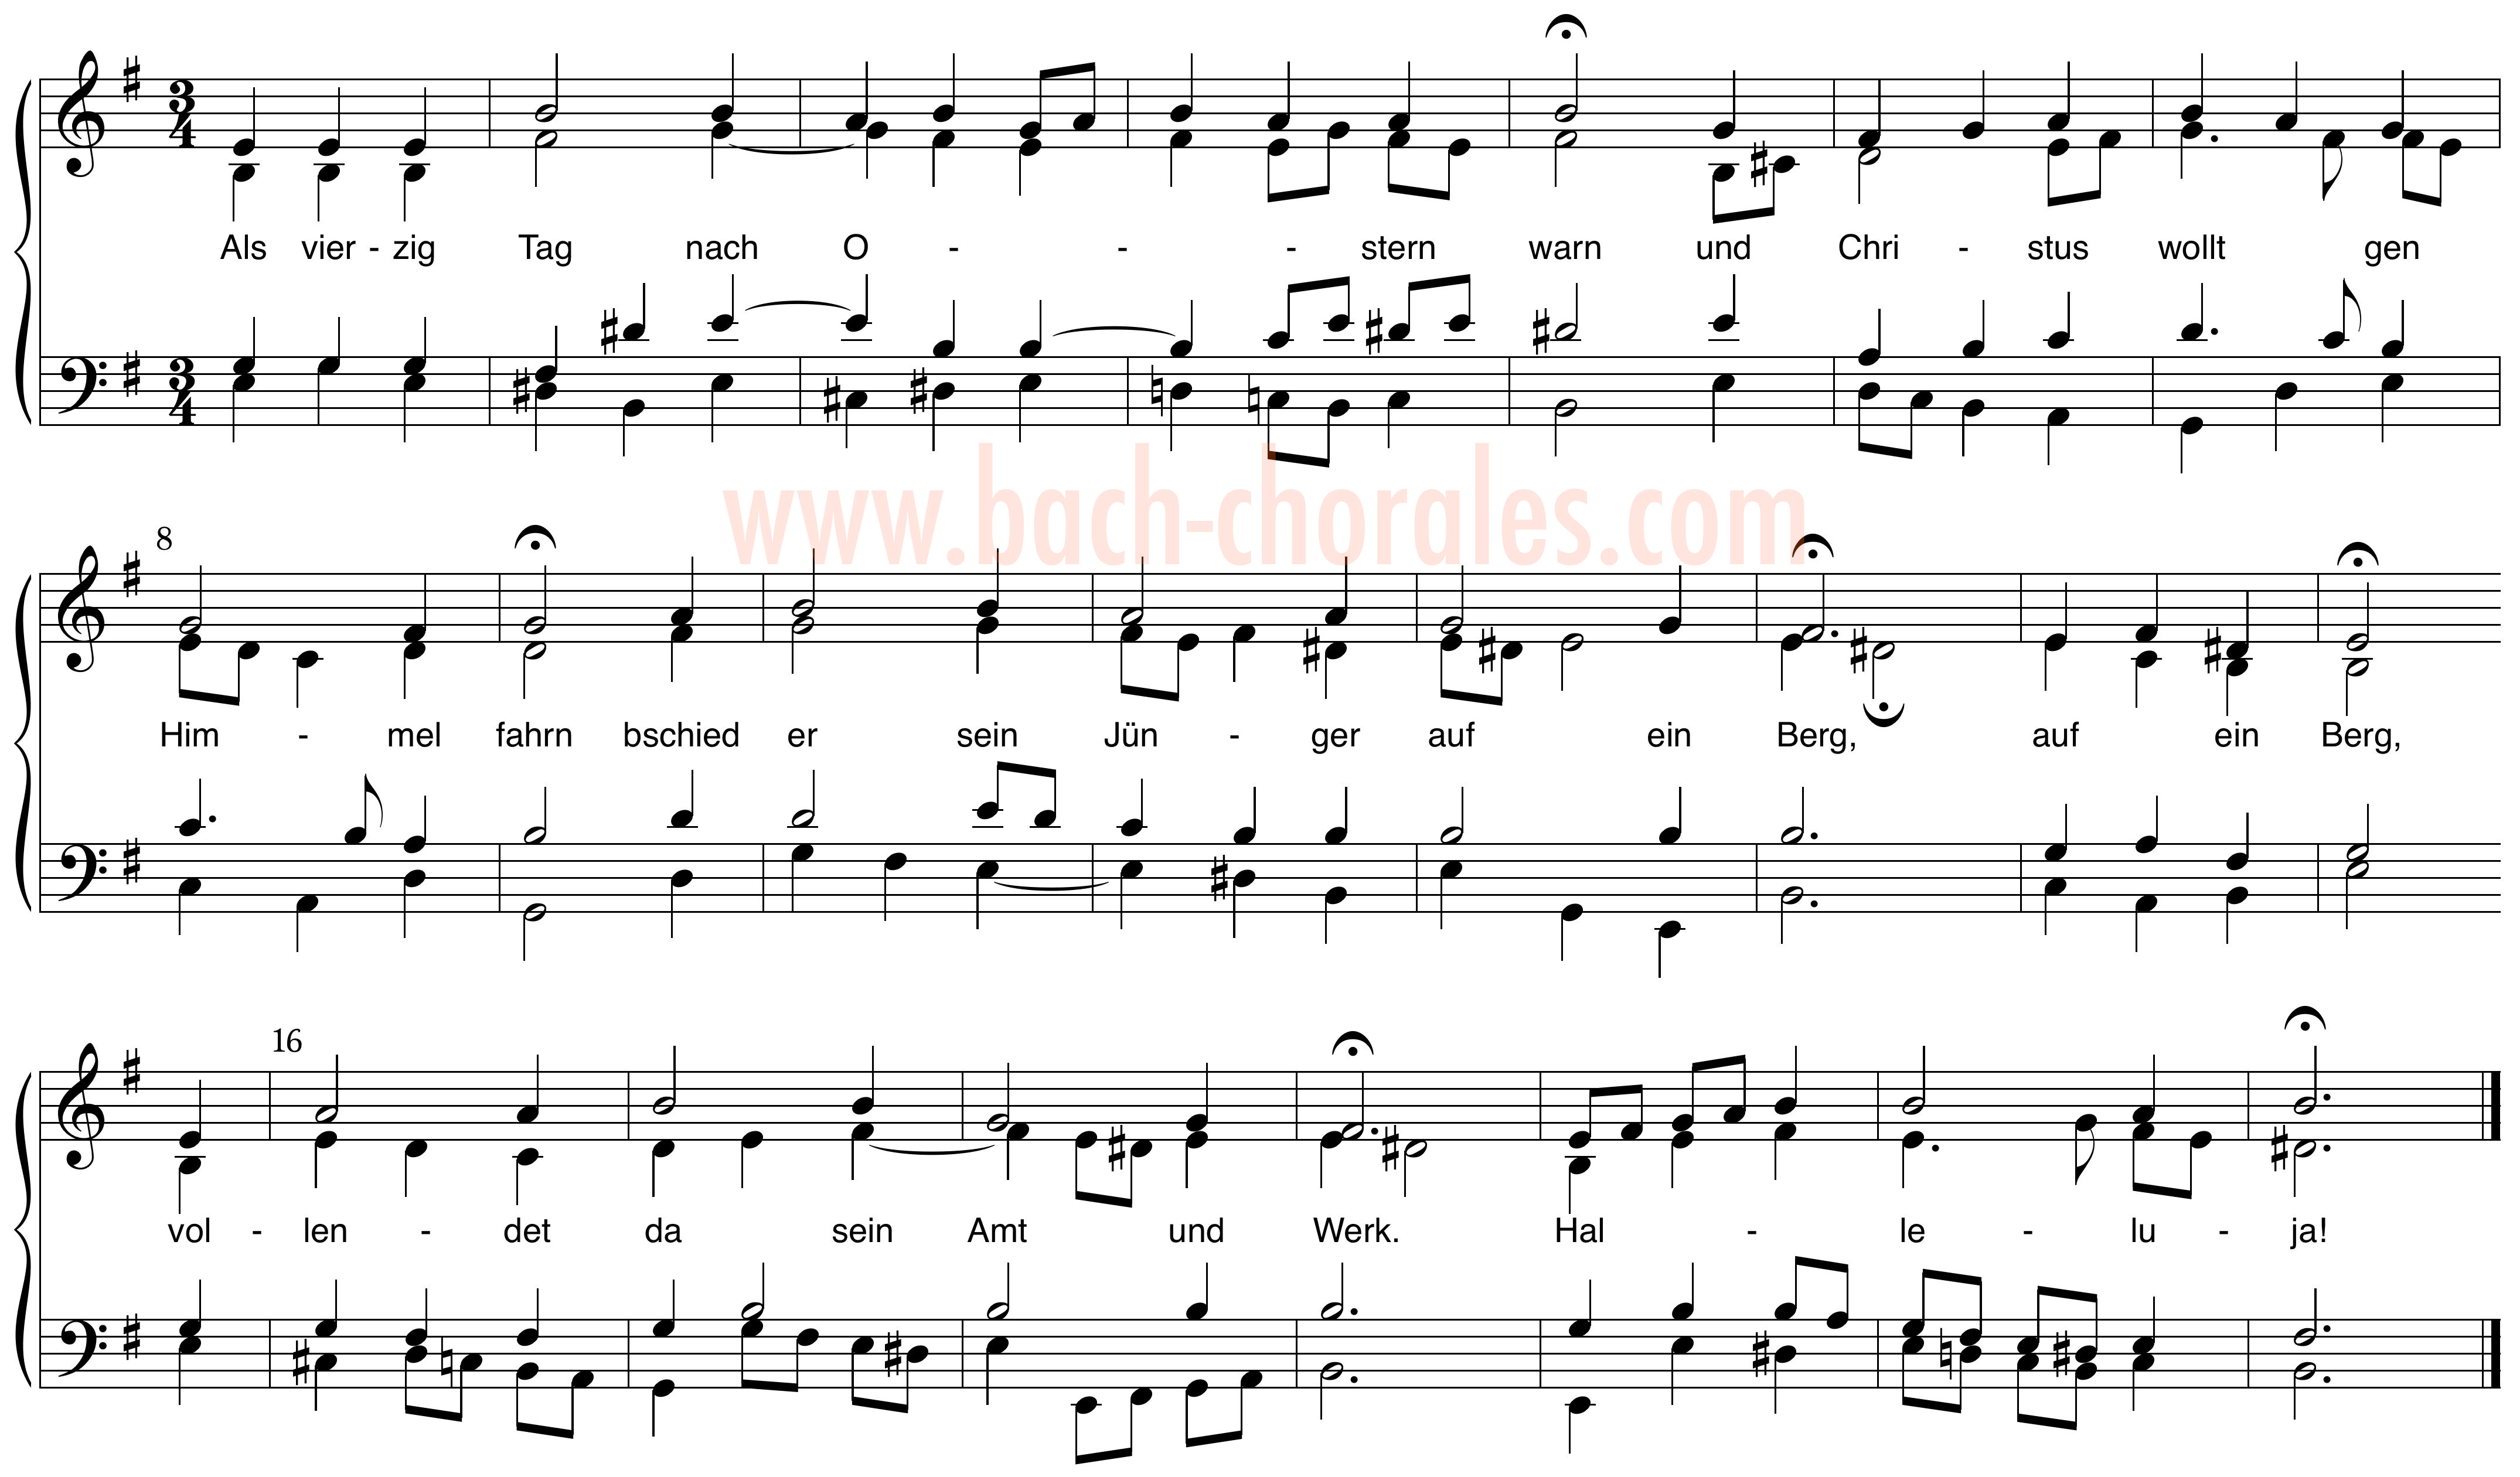 notenbeeld BWV 266 op https://www.bach-chorales.com/